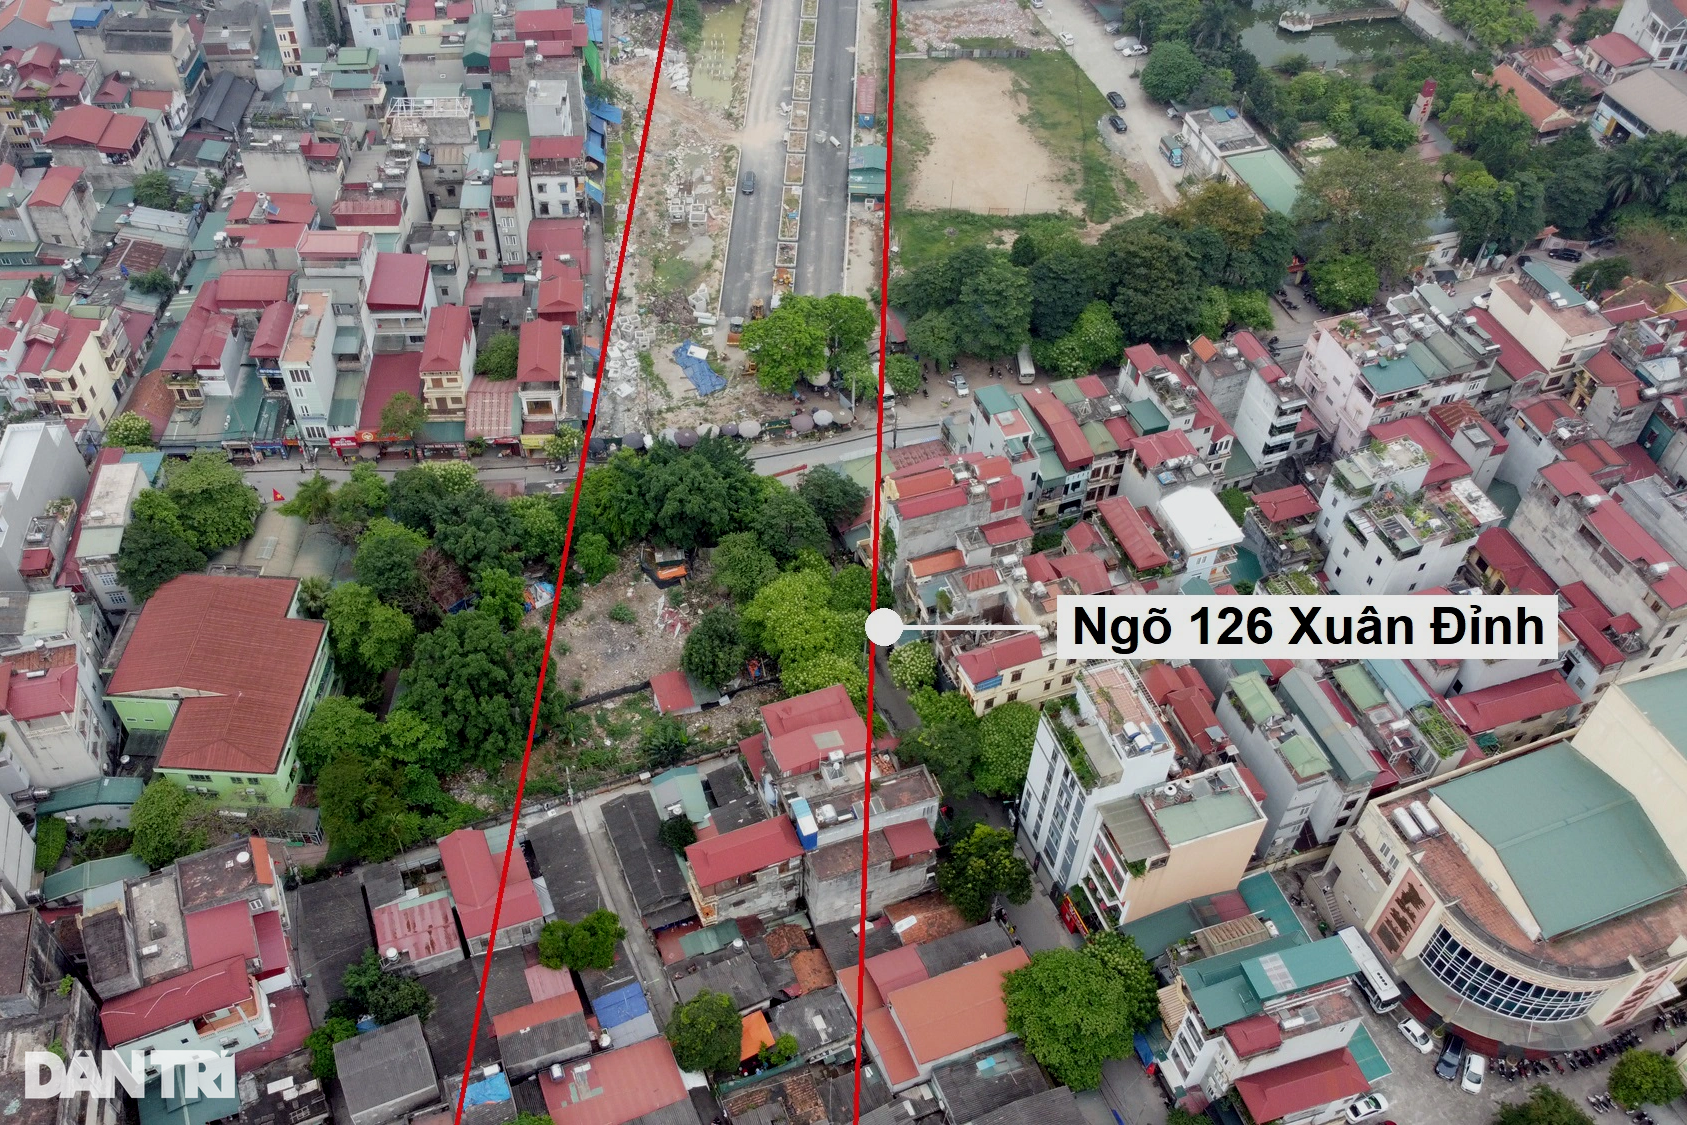 Toàn cảnh đường vành đai 2,5 đi qua nhiều khu đô thị ở Hà Nội - 4